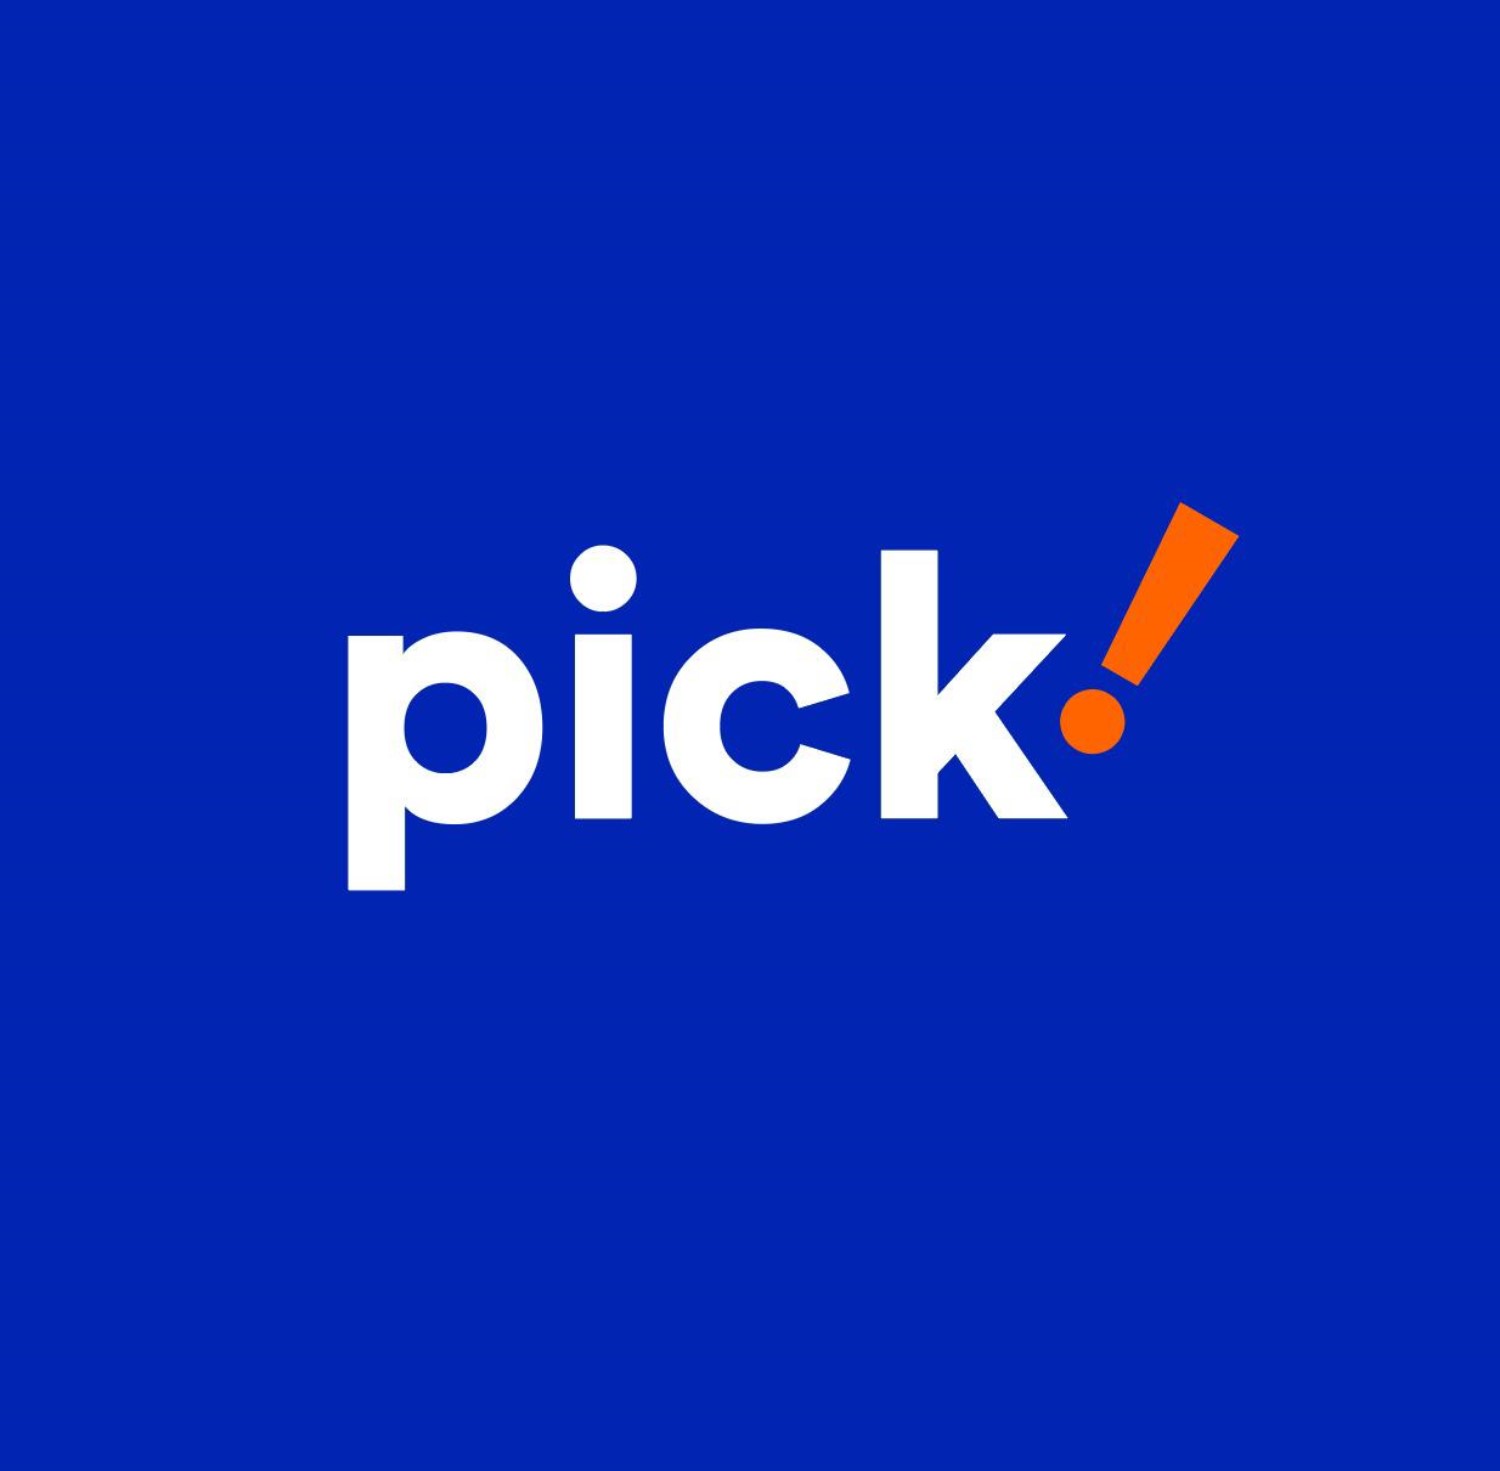 IMpact_PickLockerLaunch_Logo